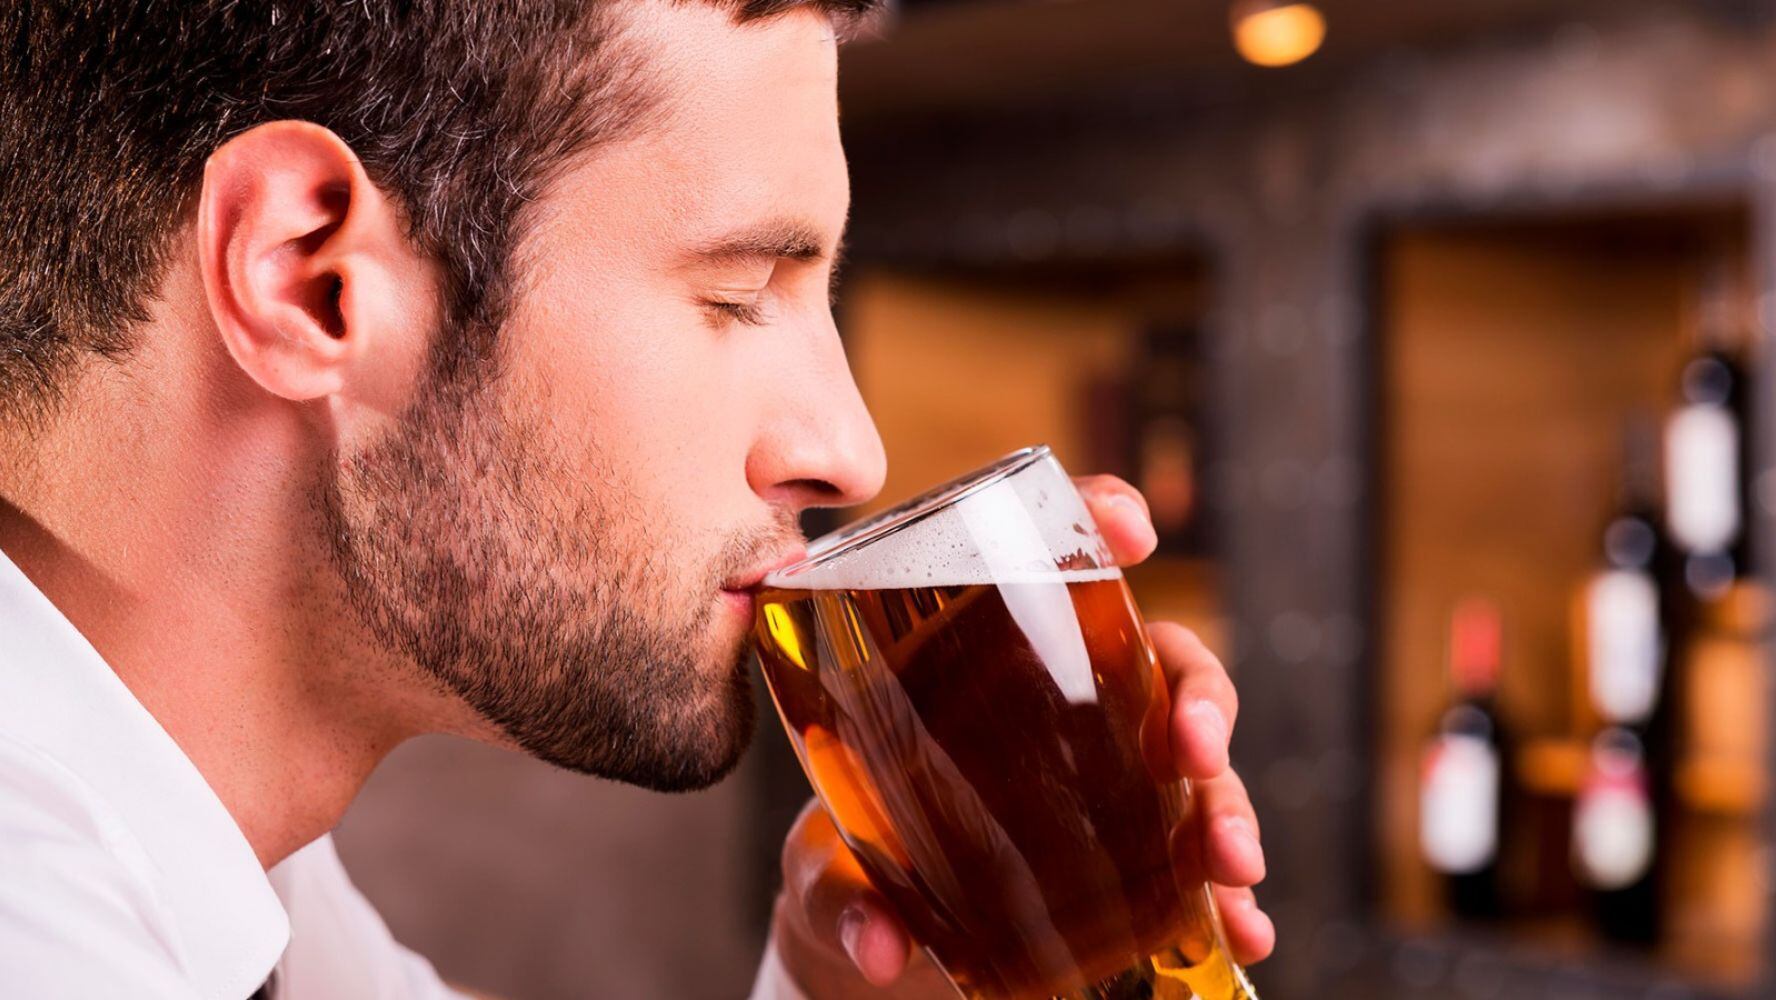 En ciertas cantidades, la cerveza puede tener algunos beneficios para el organismo. (Foto: Shutterstock)